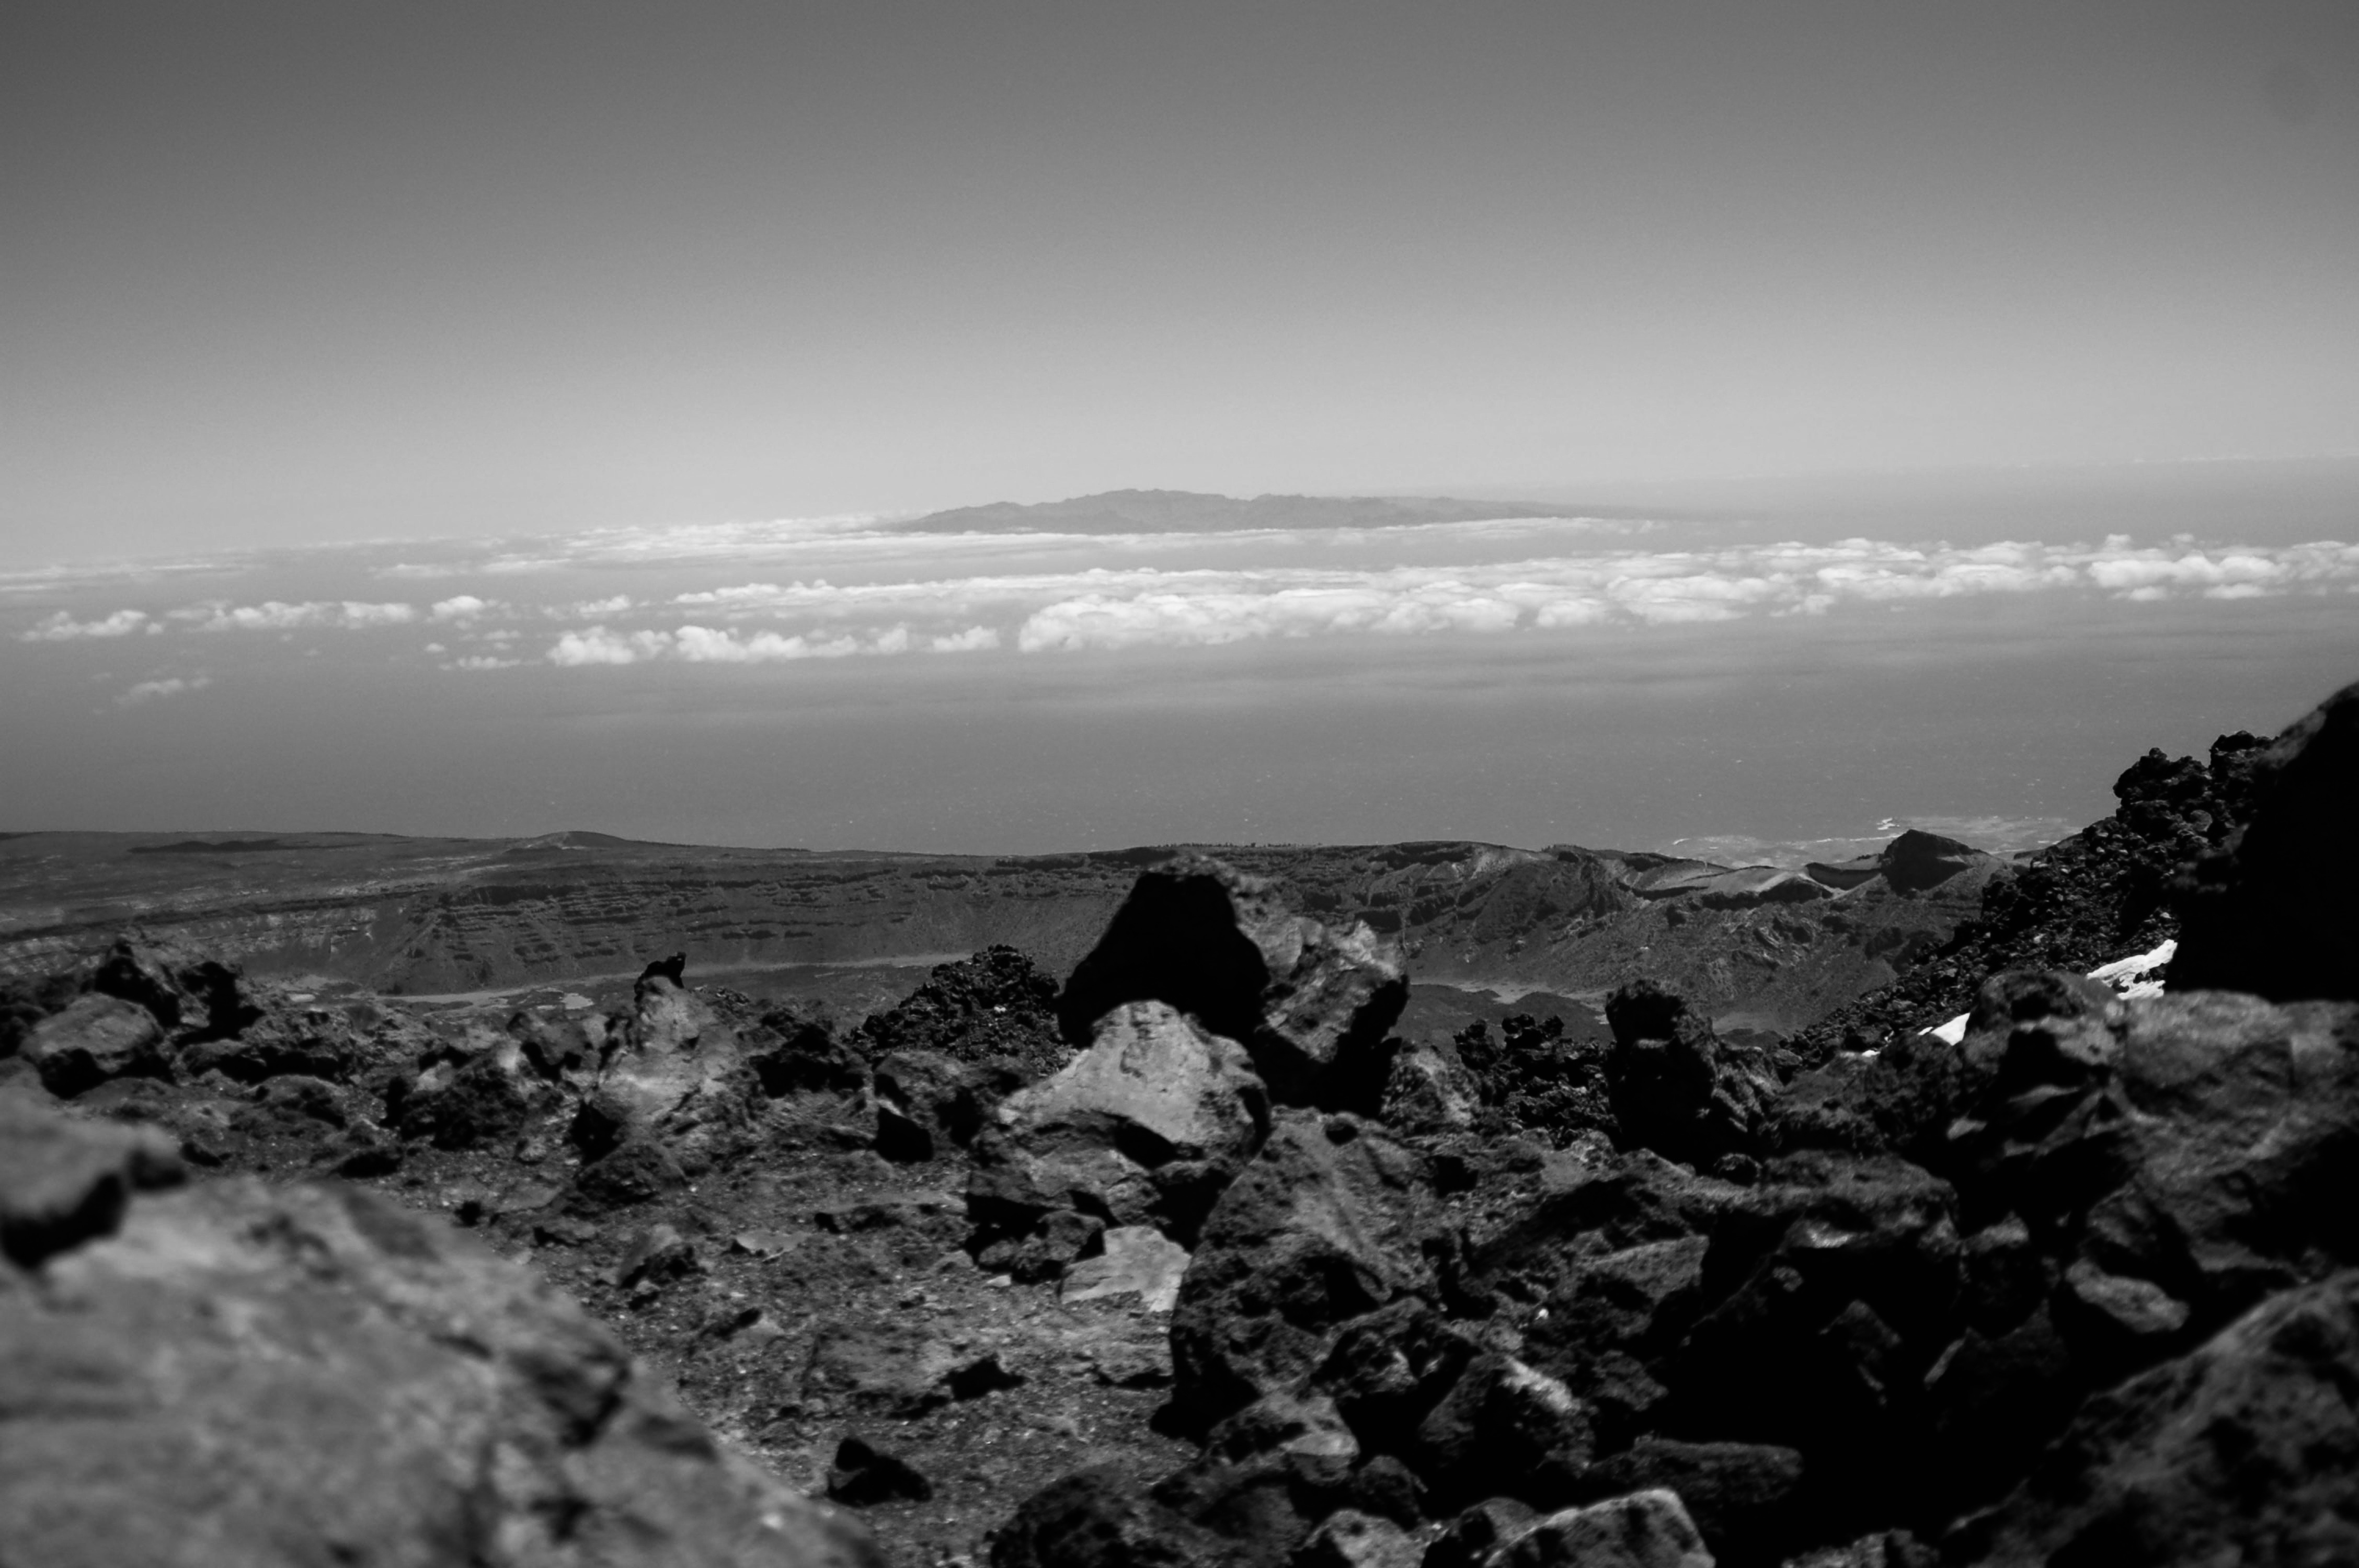  Kilátás a Teide nevű vulkán tetjéről Tenerifén (fekete-fehér fénykép)